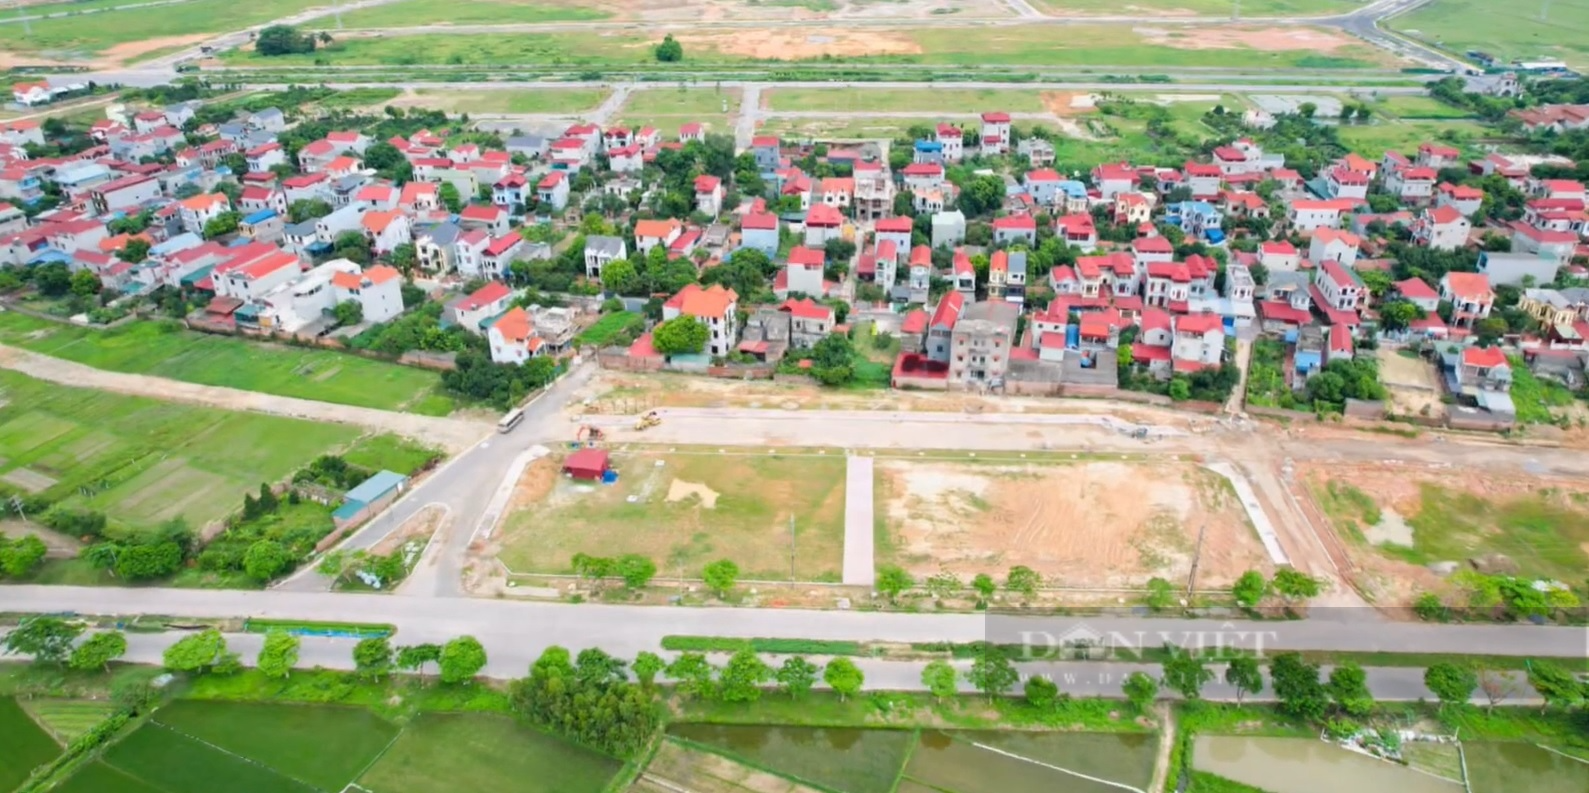 “Bùng nổ” đấu giá đất tại Hà Nội, giá khởi điểm chỉ hơn 18 triệu đồng/m2  - Ảnh 1.